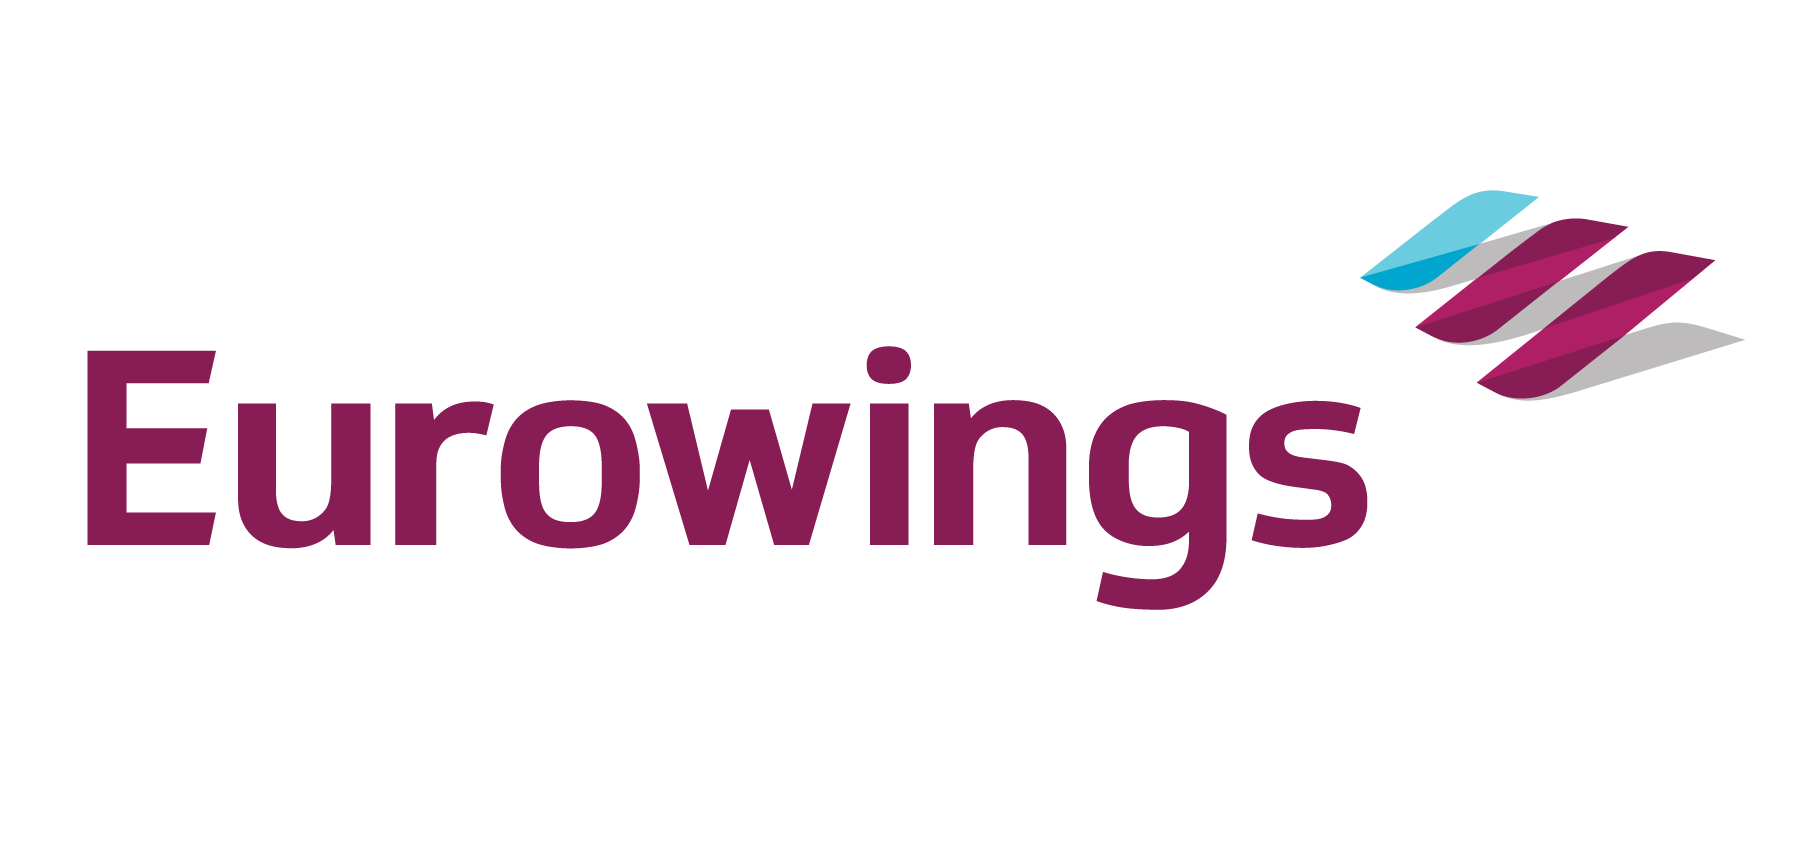 Ausbildung Eurowings Freie Ausbildungsplatze